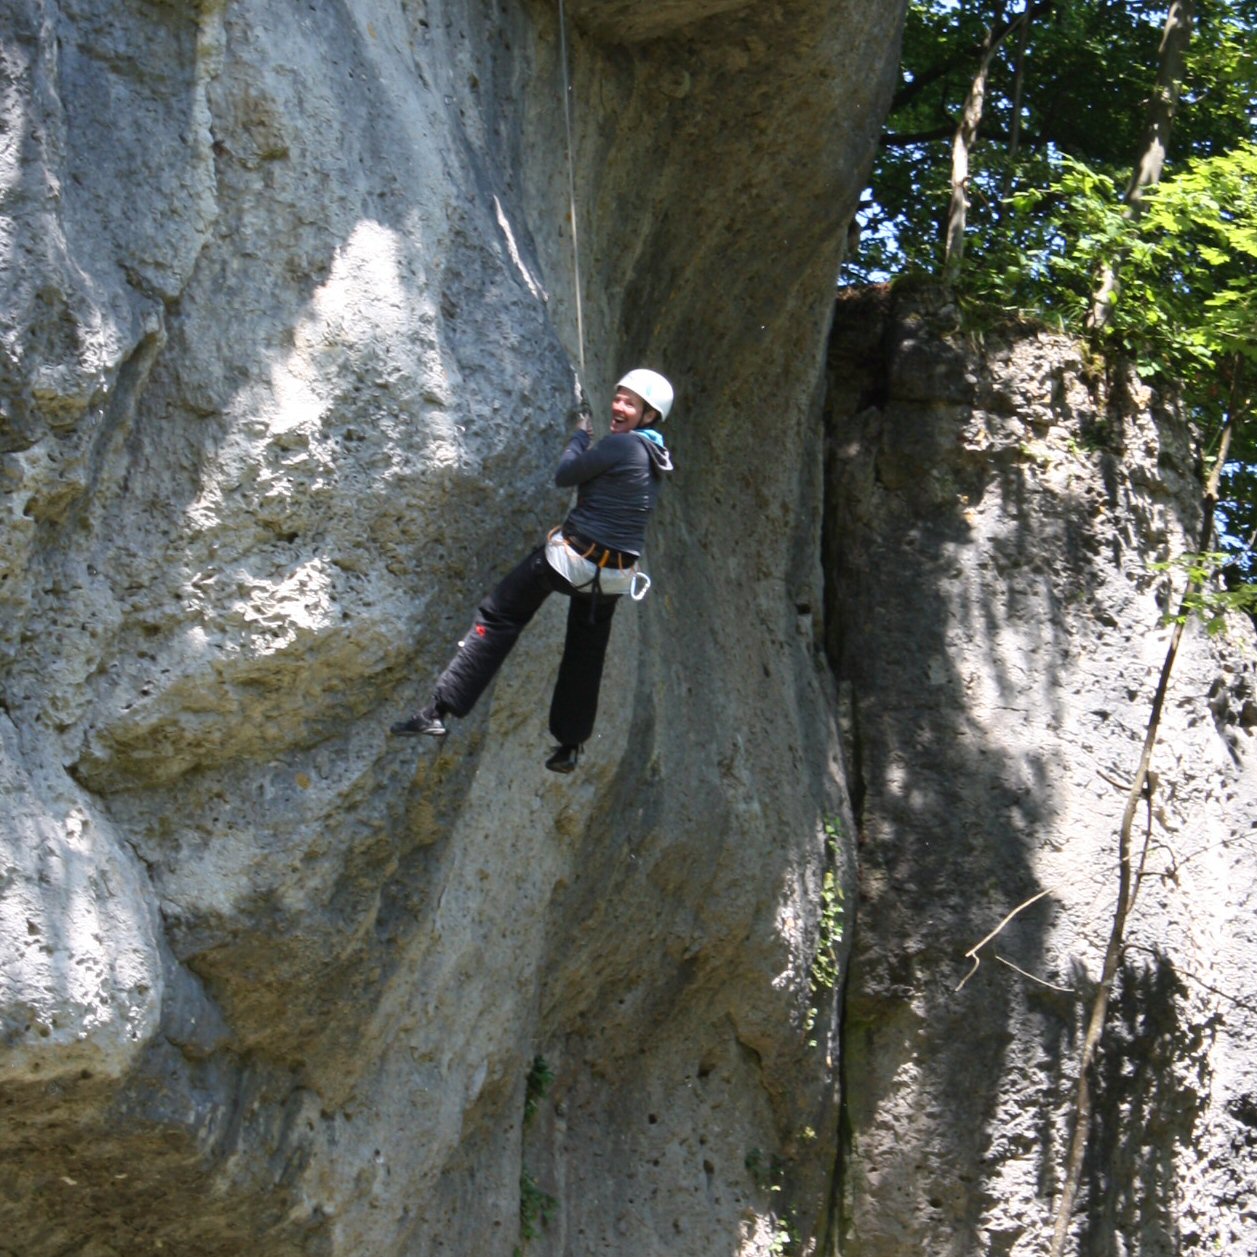 Im Seil hängen am Fels: Eine Erfahrung, die Daniela Gerlach unbedingt weiterempfiehlt. Foto: Trudbert Ziegler (c) Kirchenzeitung Glaube und Leben